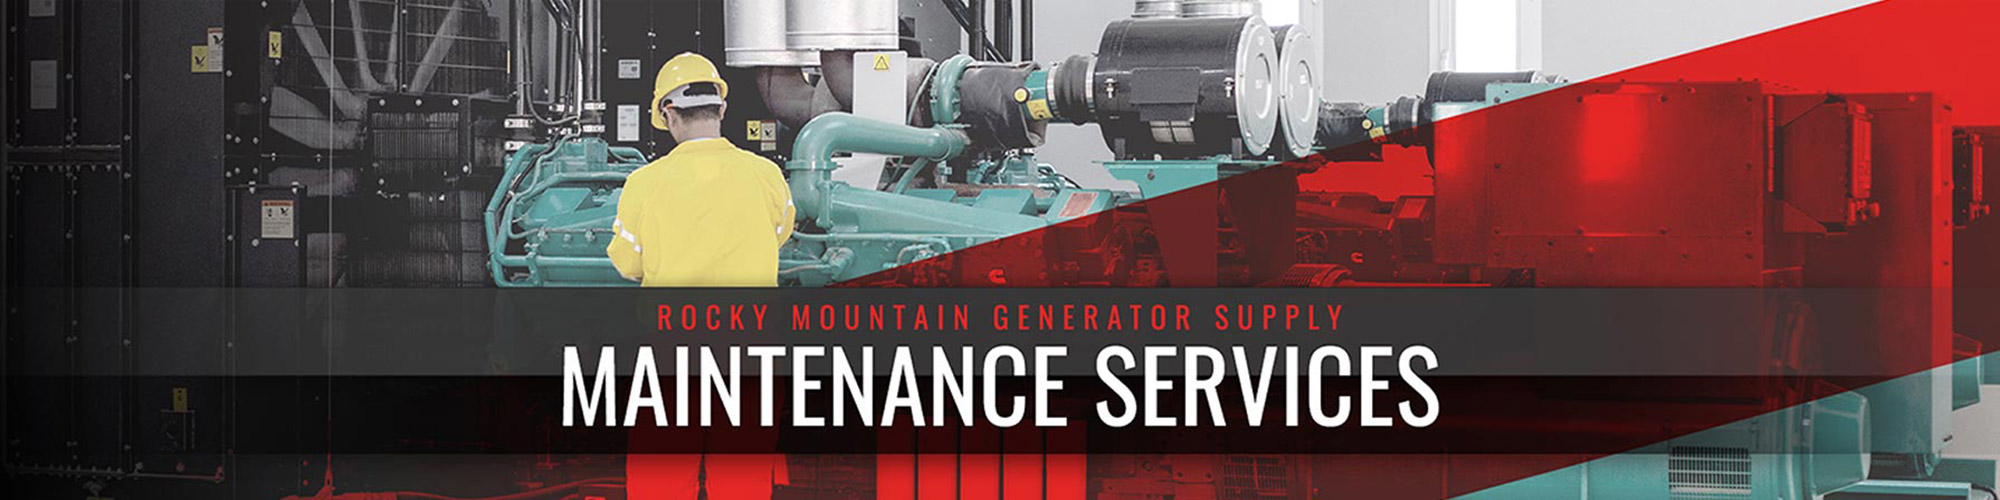 maintenance services